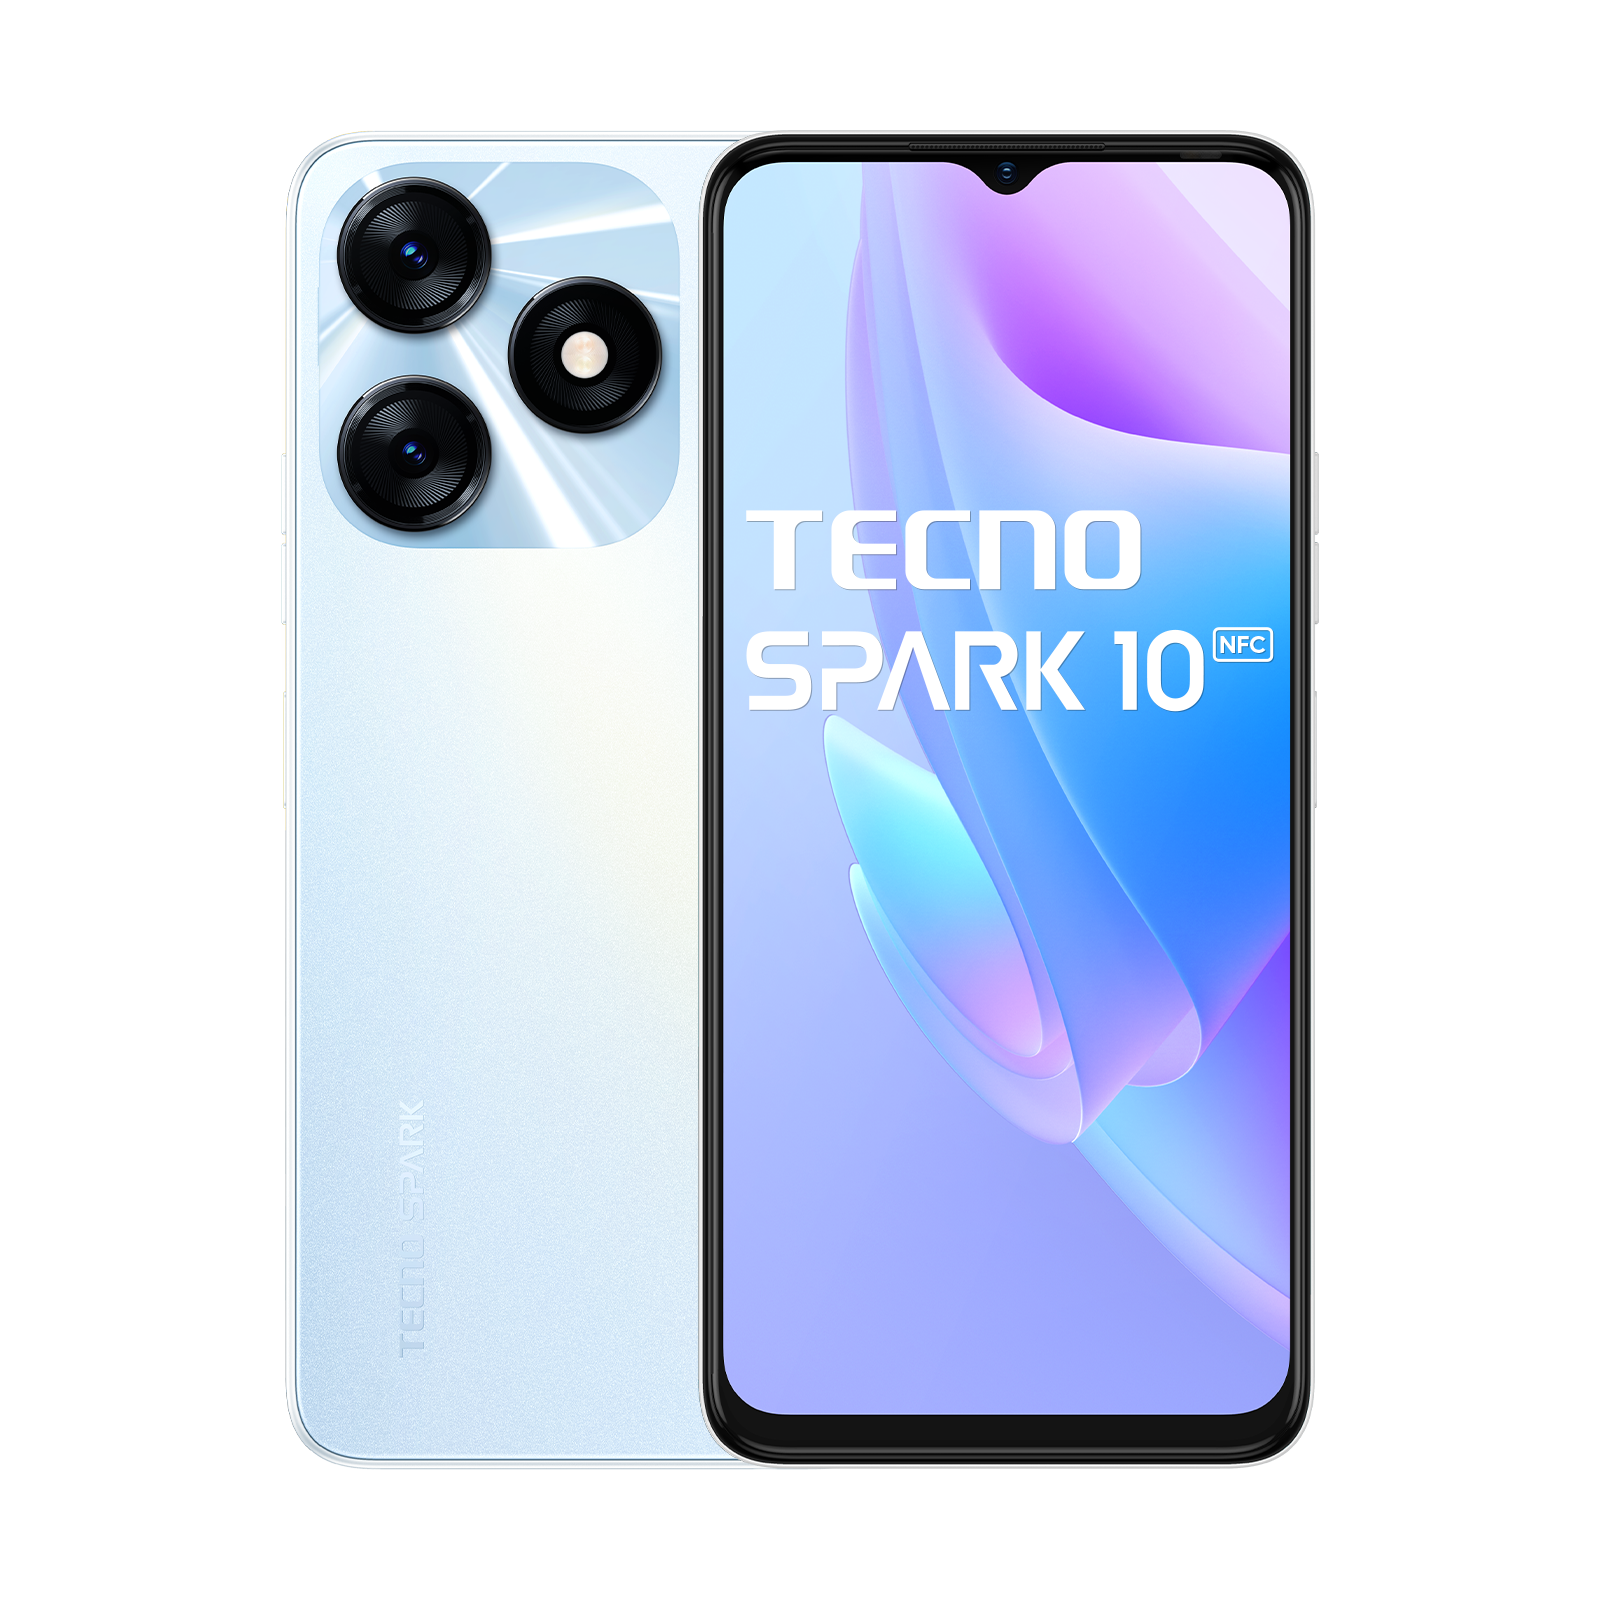 TECNO SPARK 10 NFC od TECNO w SimplyBuy.pl